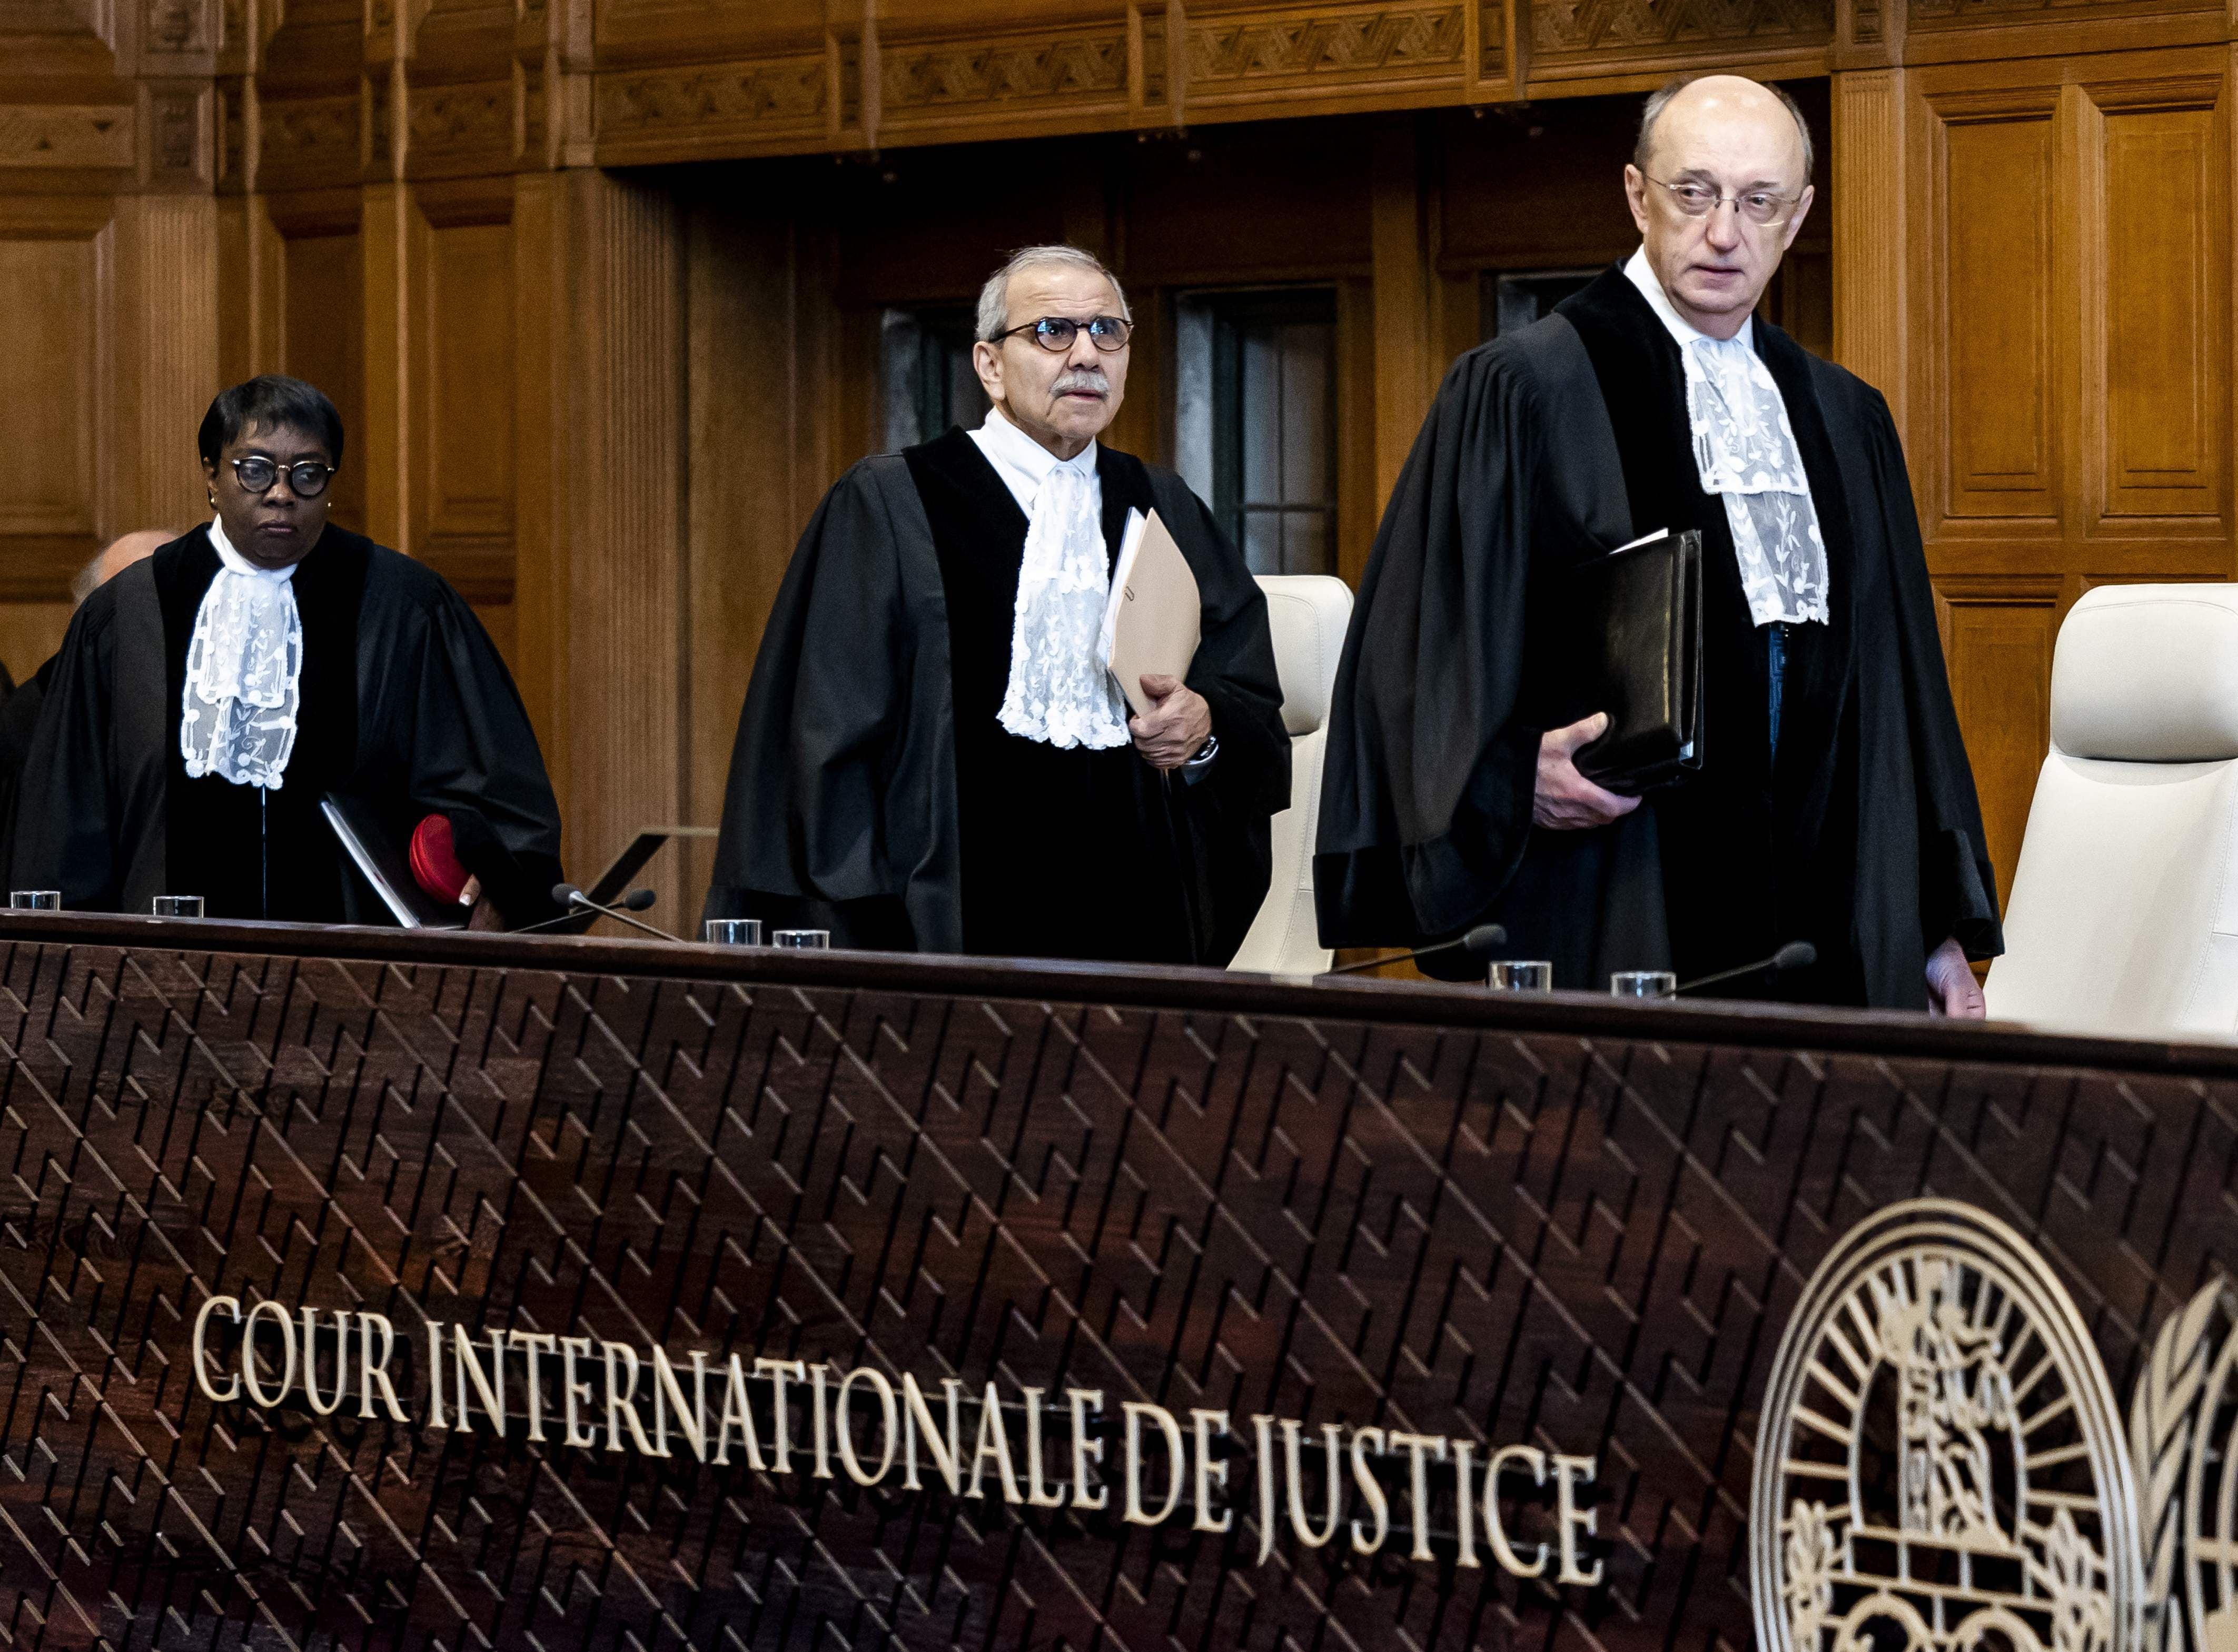 19 casos están en cola en Corte Internacional de Justicia antes de las demandas de Ecuador y México